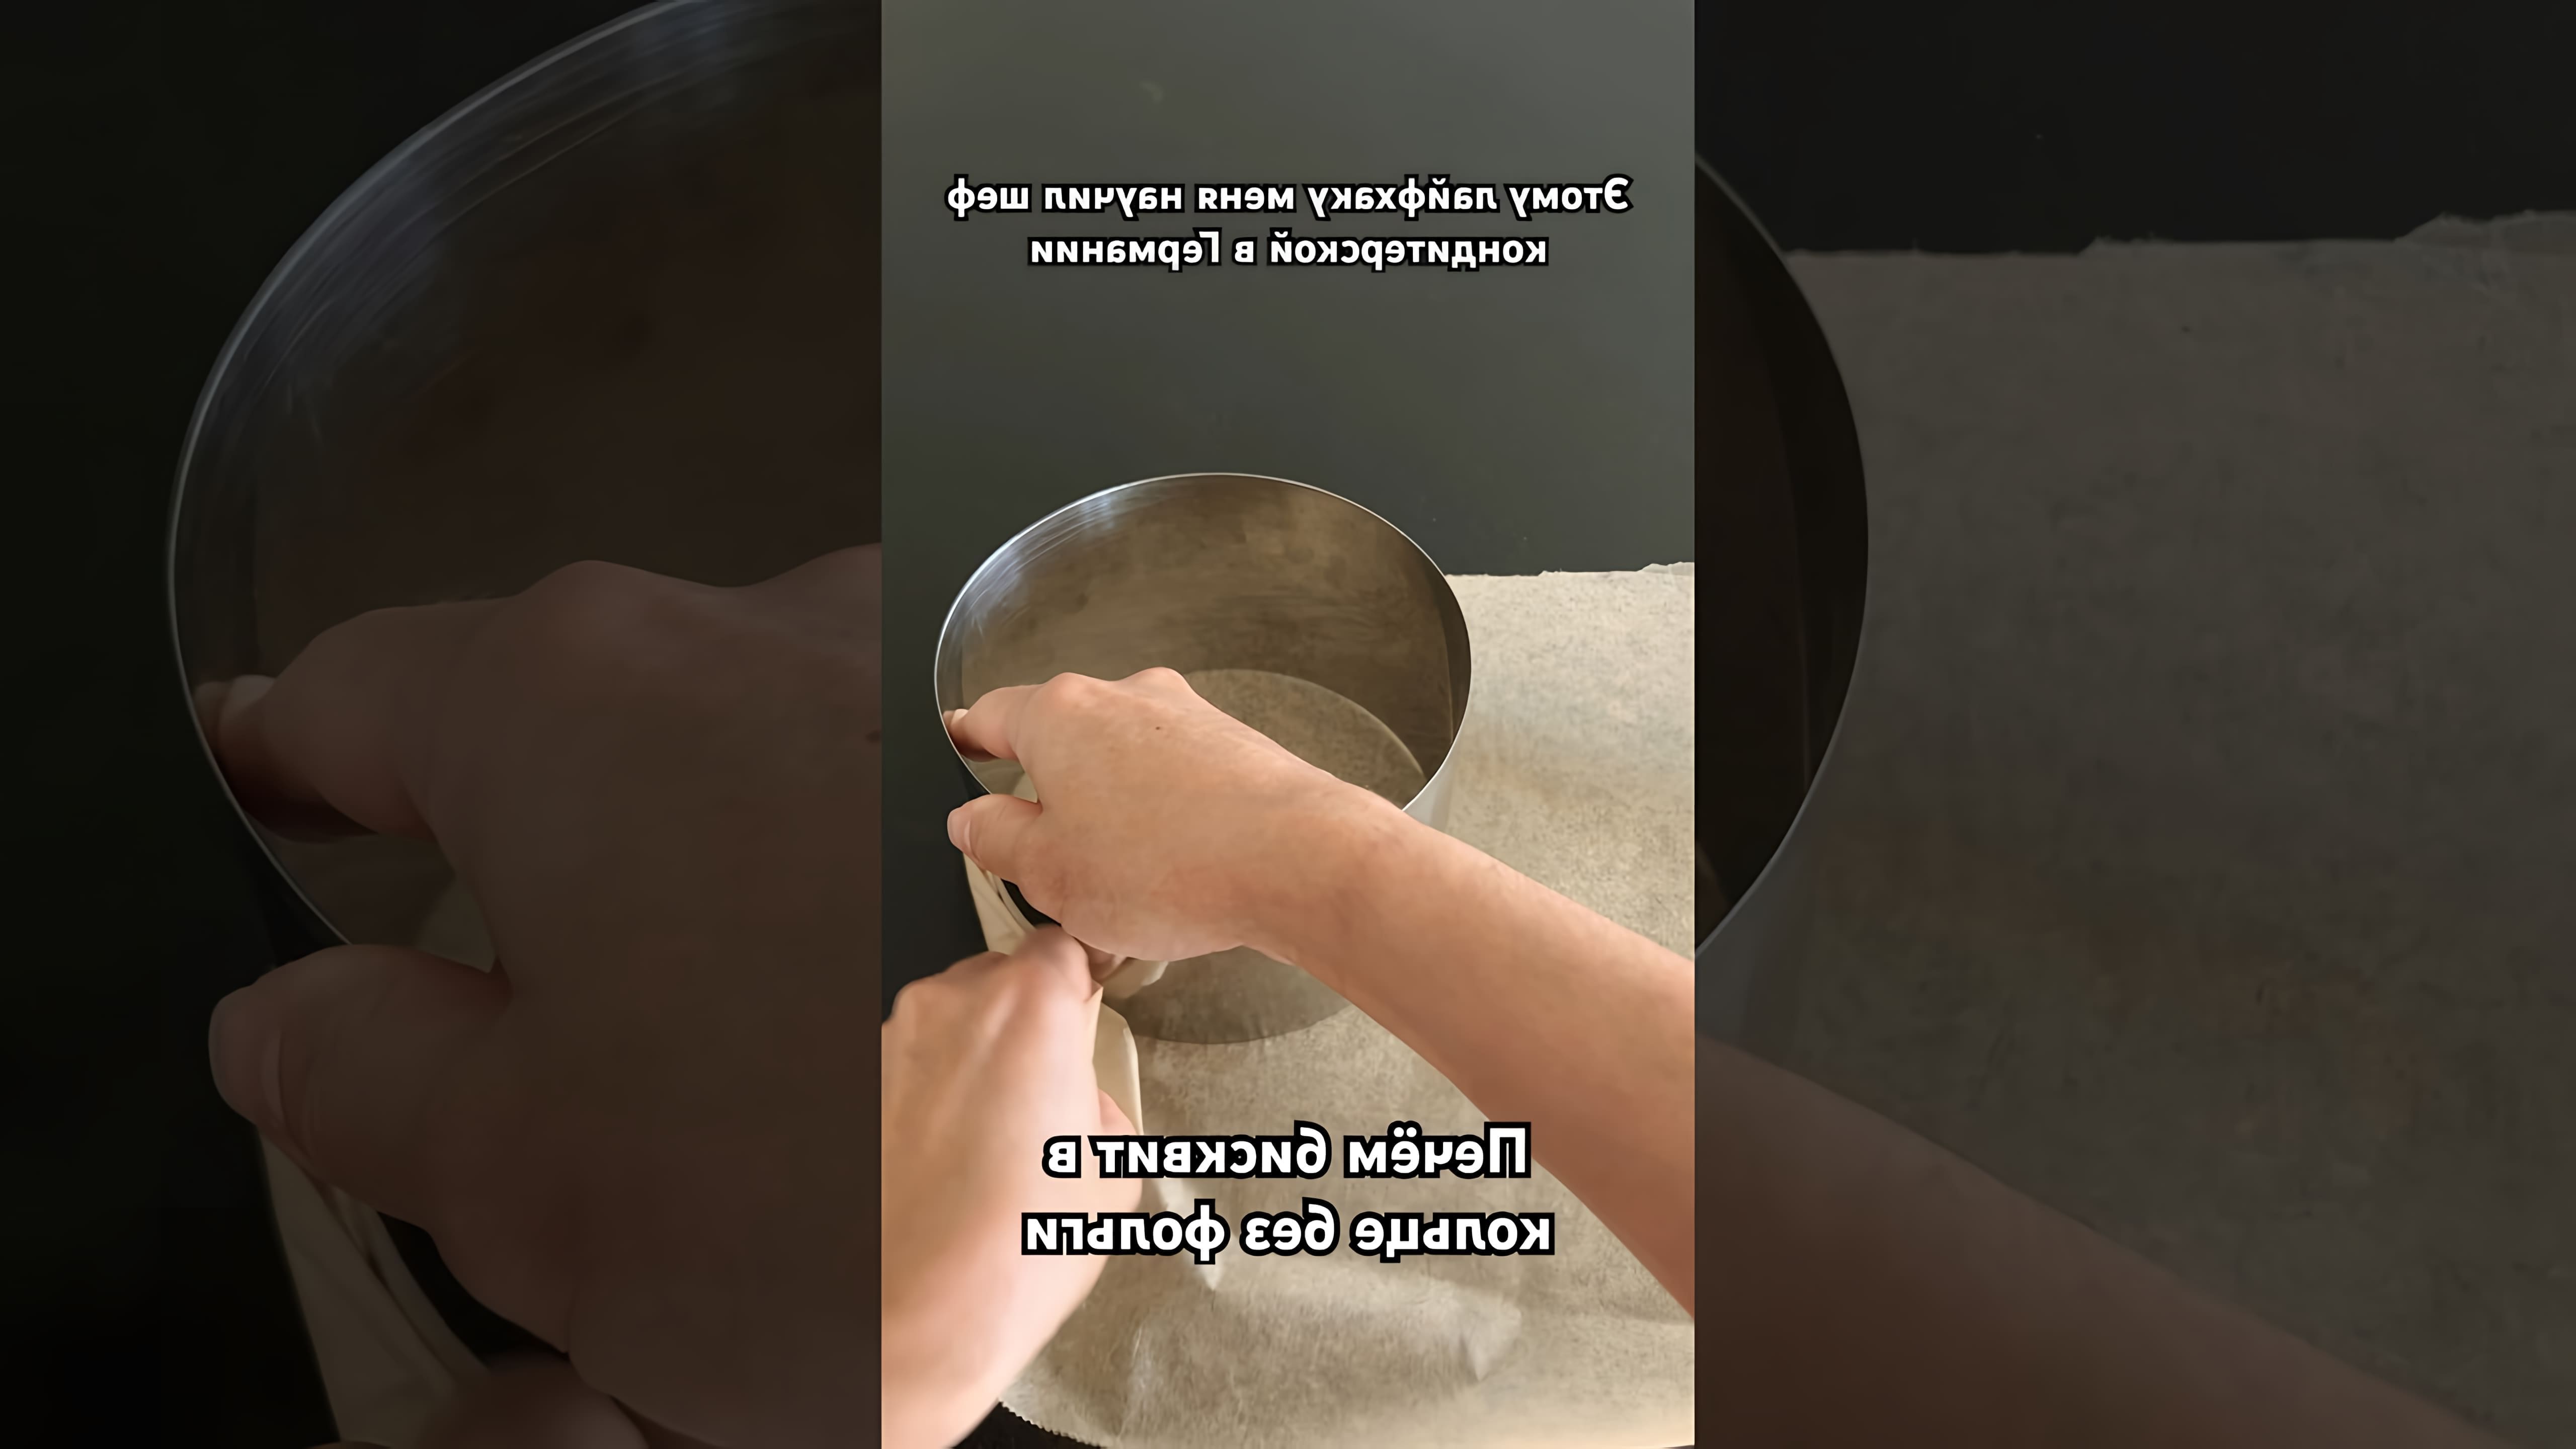 В этом видео демонстрируется процесс приготовления бисквита в кольце без использования фольги